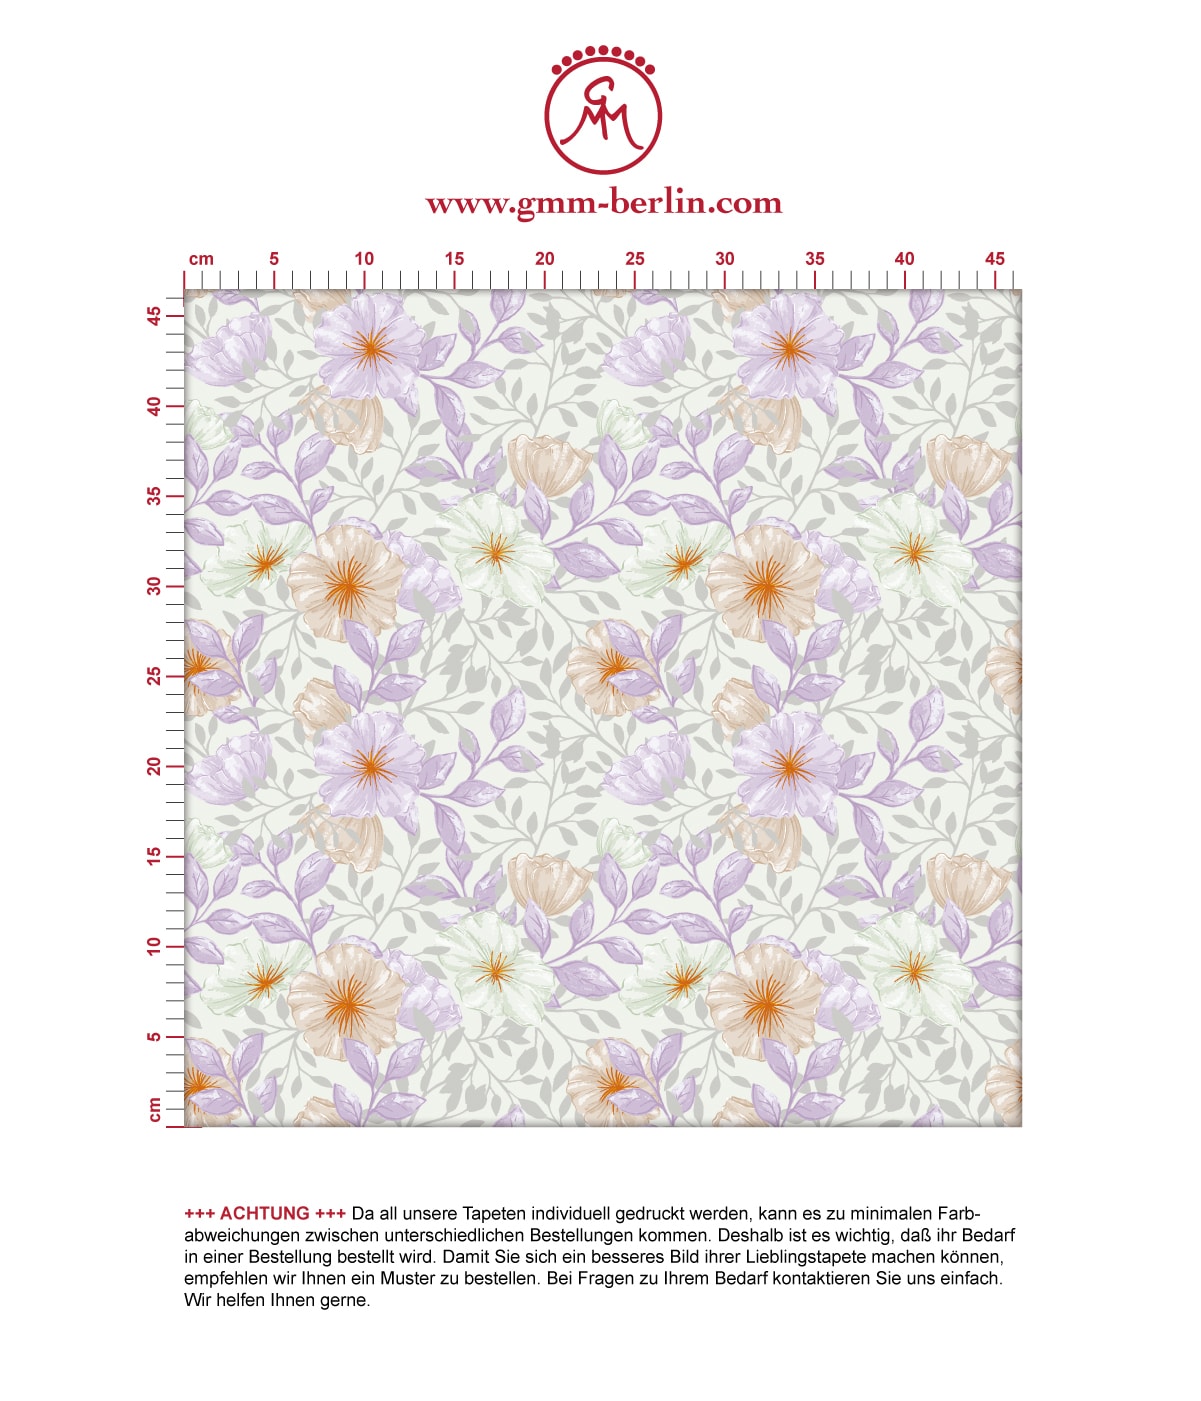 Üppige Tapete "Hibiskus Garten" mit zarten Blüten, lila Vlies-Tapete für Schlafzimmer. Aus dem GMM-BERLIN.com Sortiment: Schöne Tapeten in der Farbe: violett